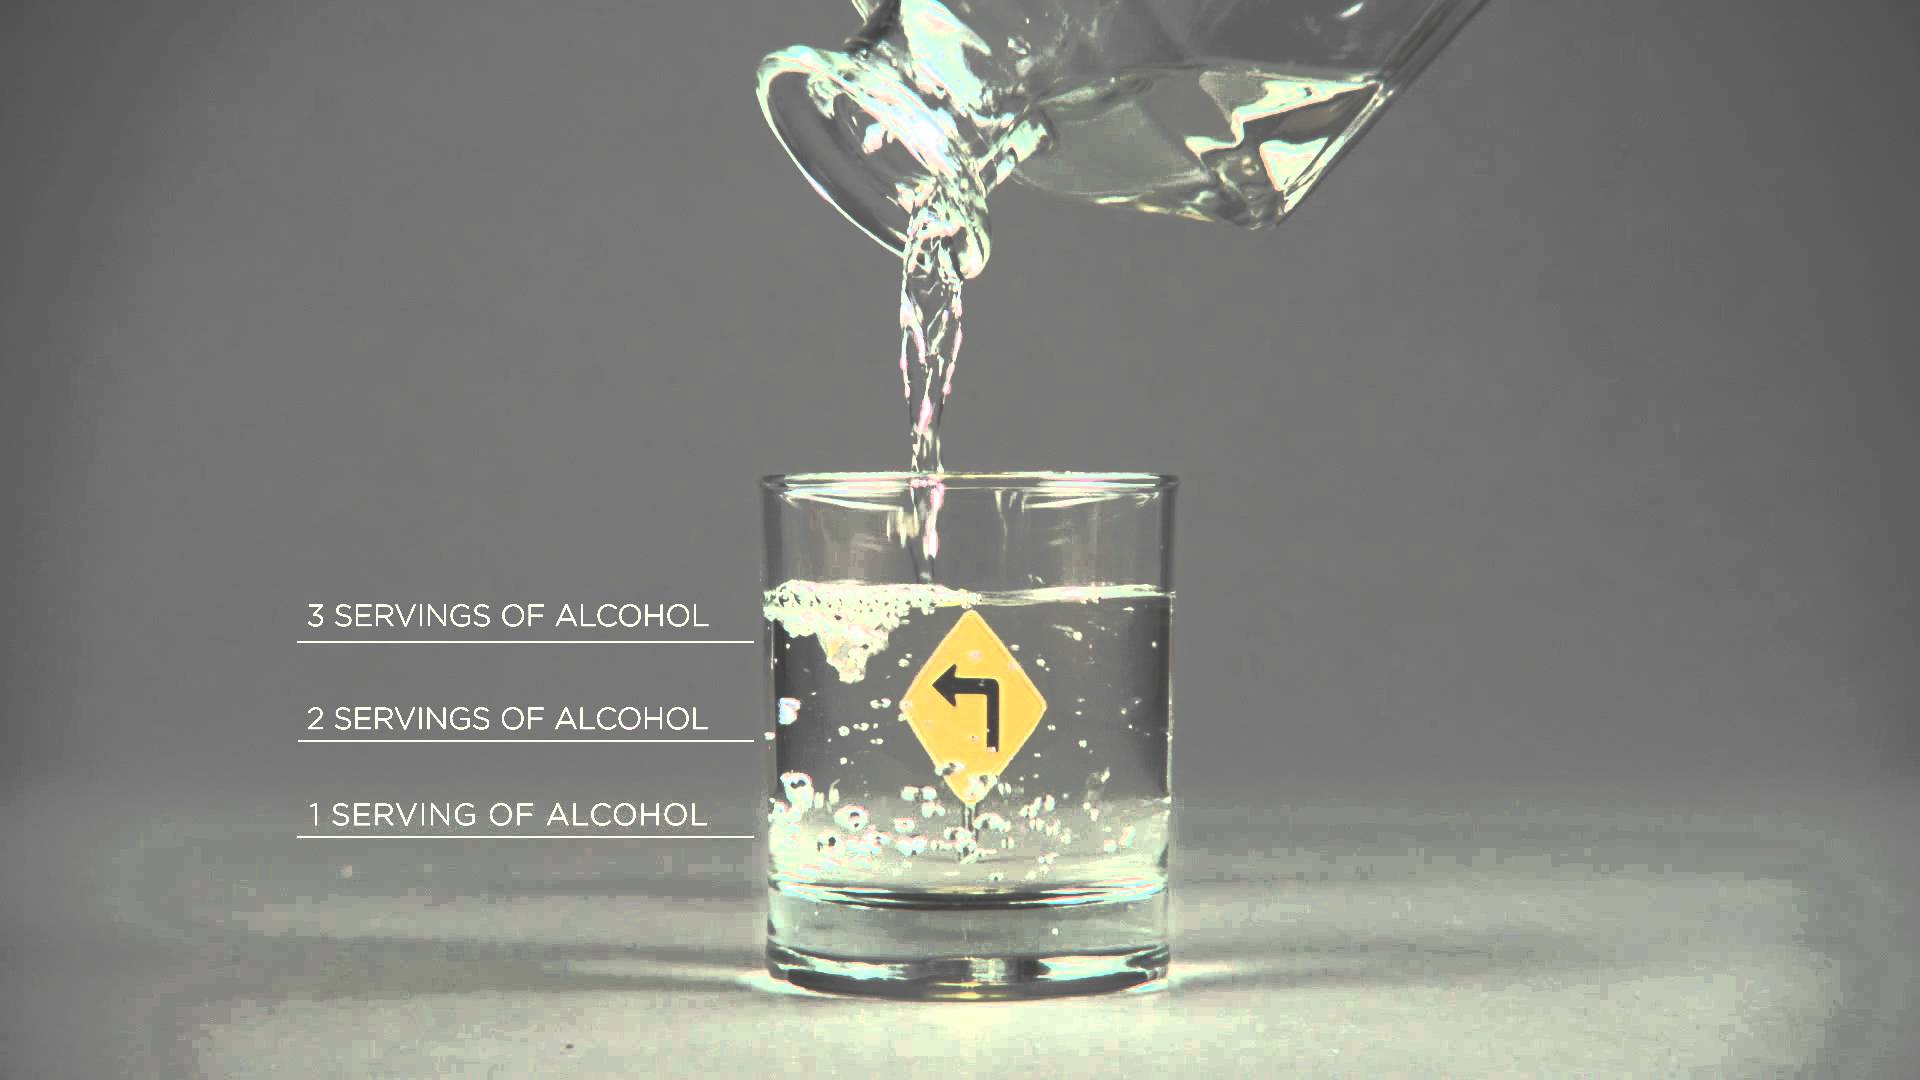 VIDEO: Iespaidīgs video rullītis par braukšanu dzērumā jeb kā alkohols ietekmē autovadītāja redzi!